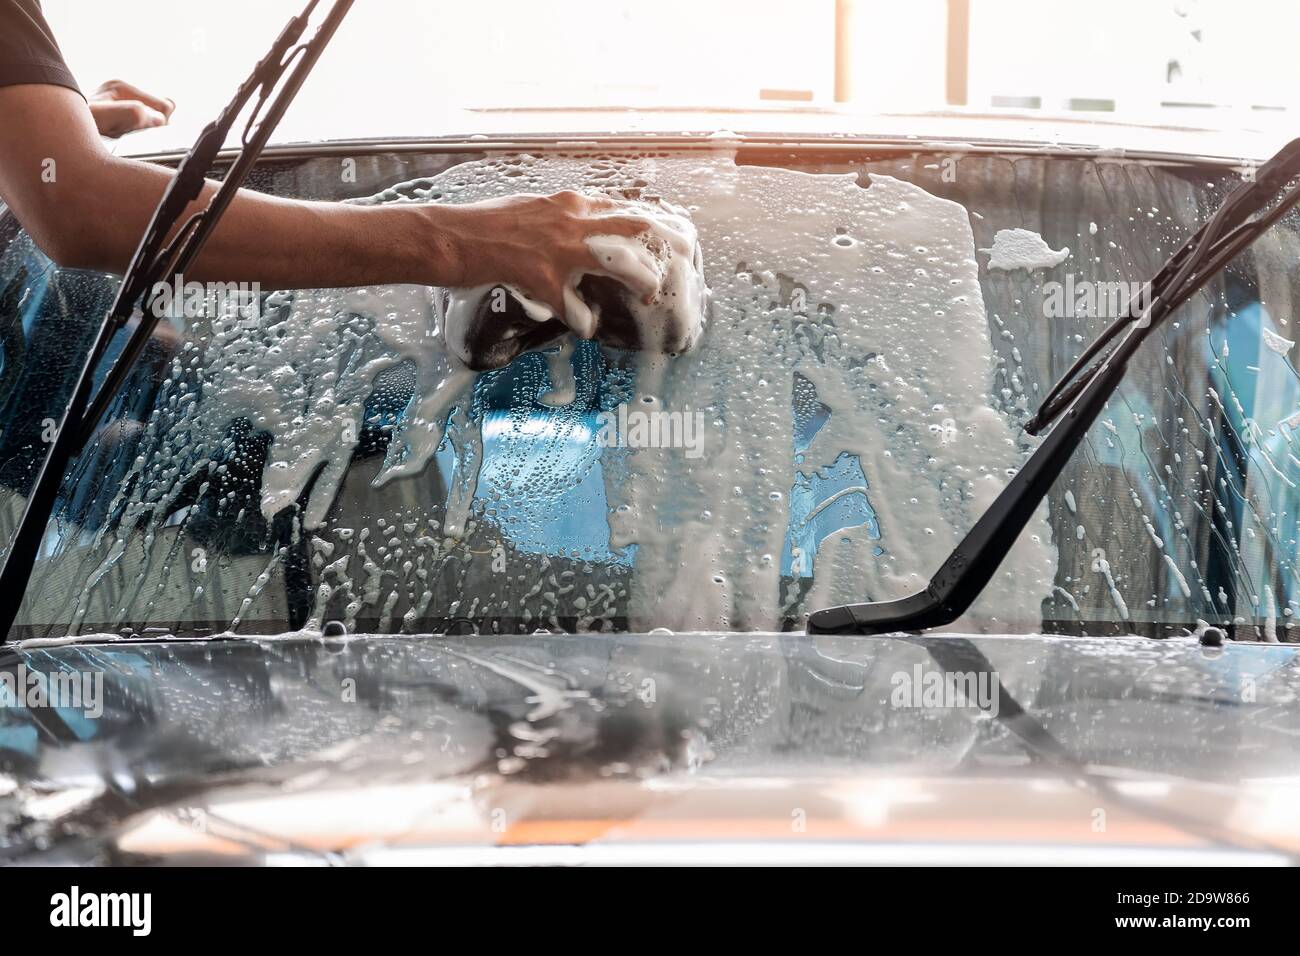 Le personnel de lavage de voiture utilise une éponge pour nettoyer le pare-brise de la voiture. Banque D'Images